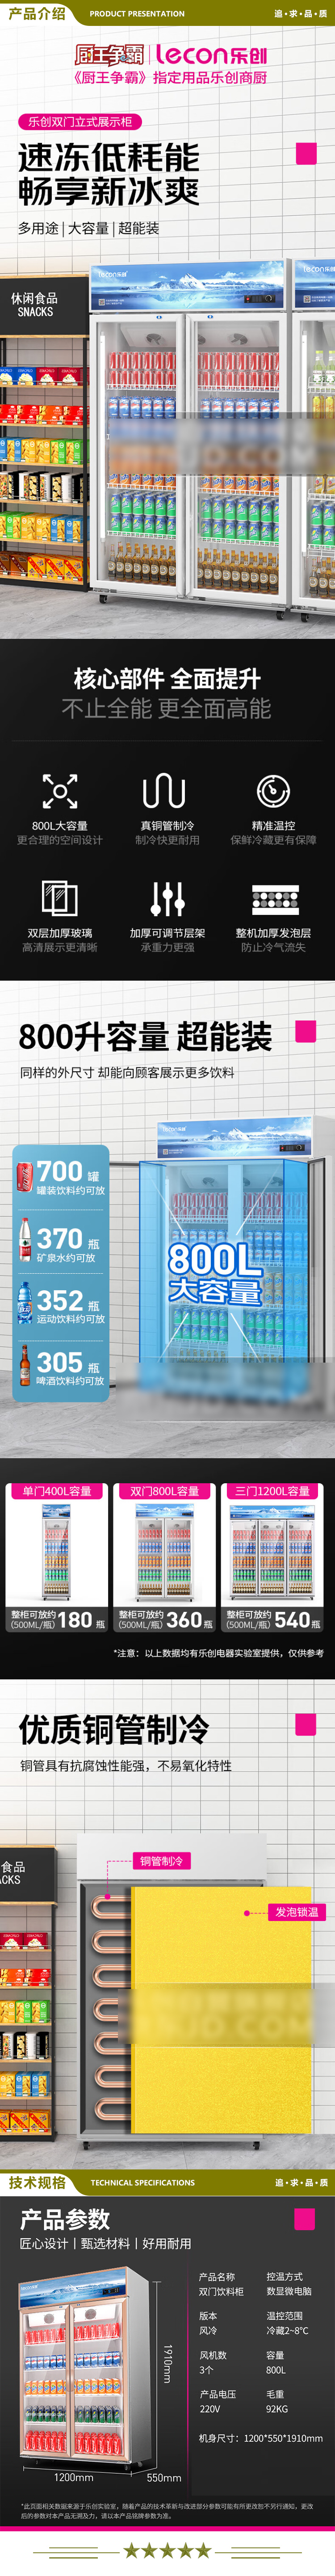 乐创(lecon) LC-ZSG02 800F B3 展示柜冷藏 商用便利店冰箱超市陈列冰柜饮料酒水冷柜保鲜柜双开门风冷  2.jpg